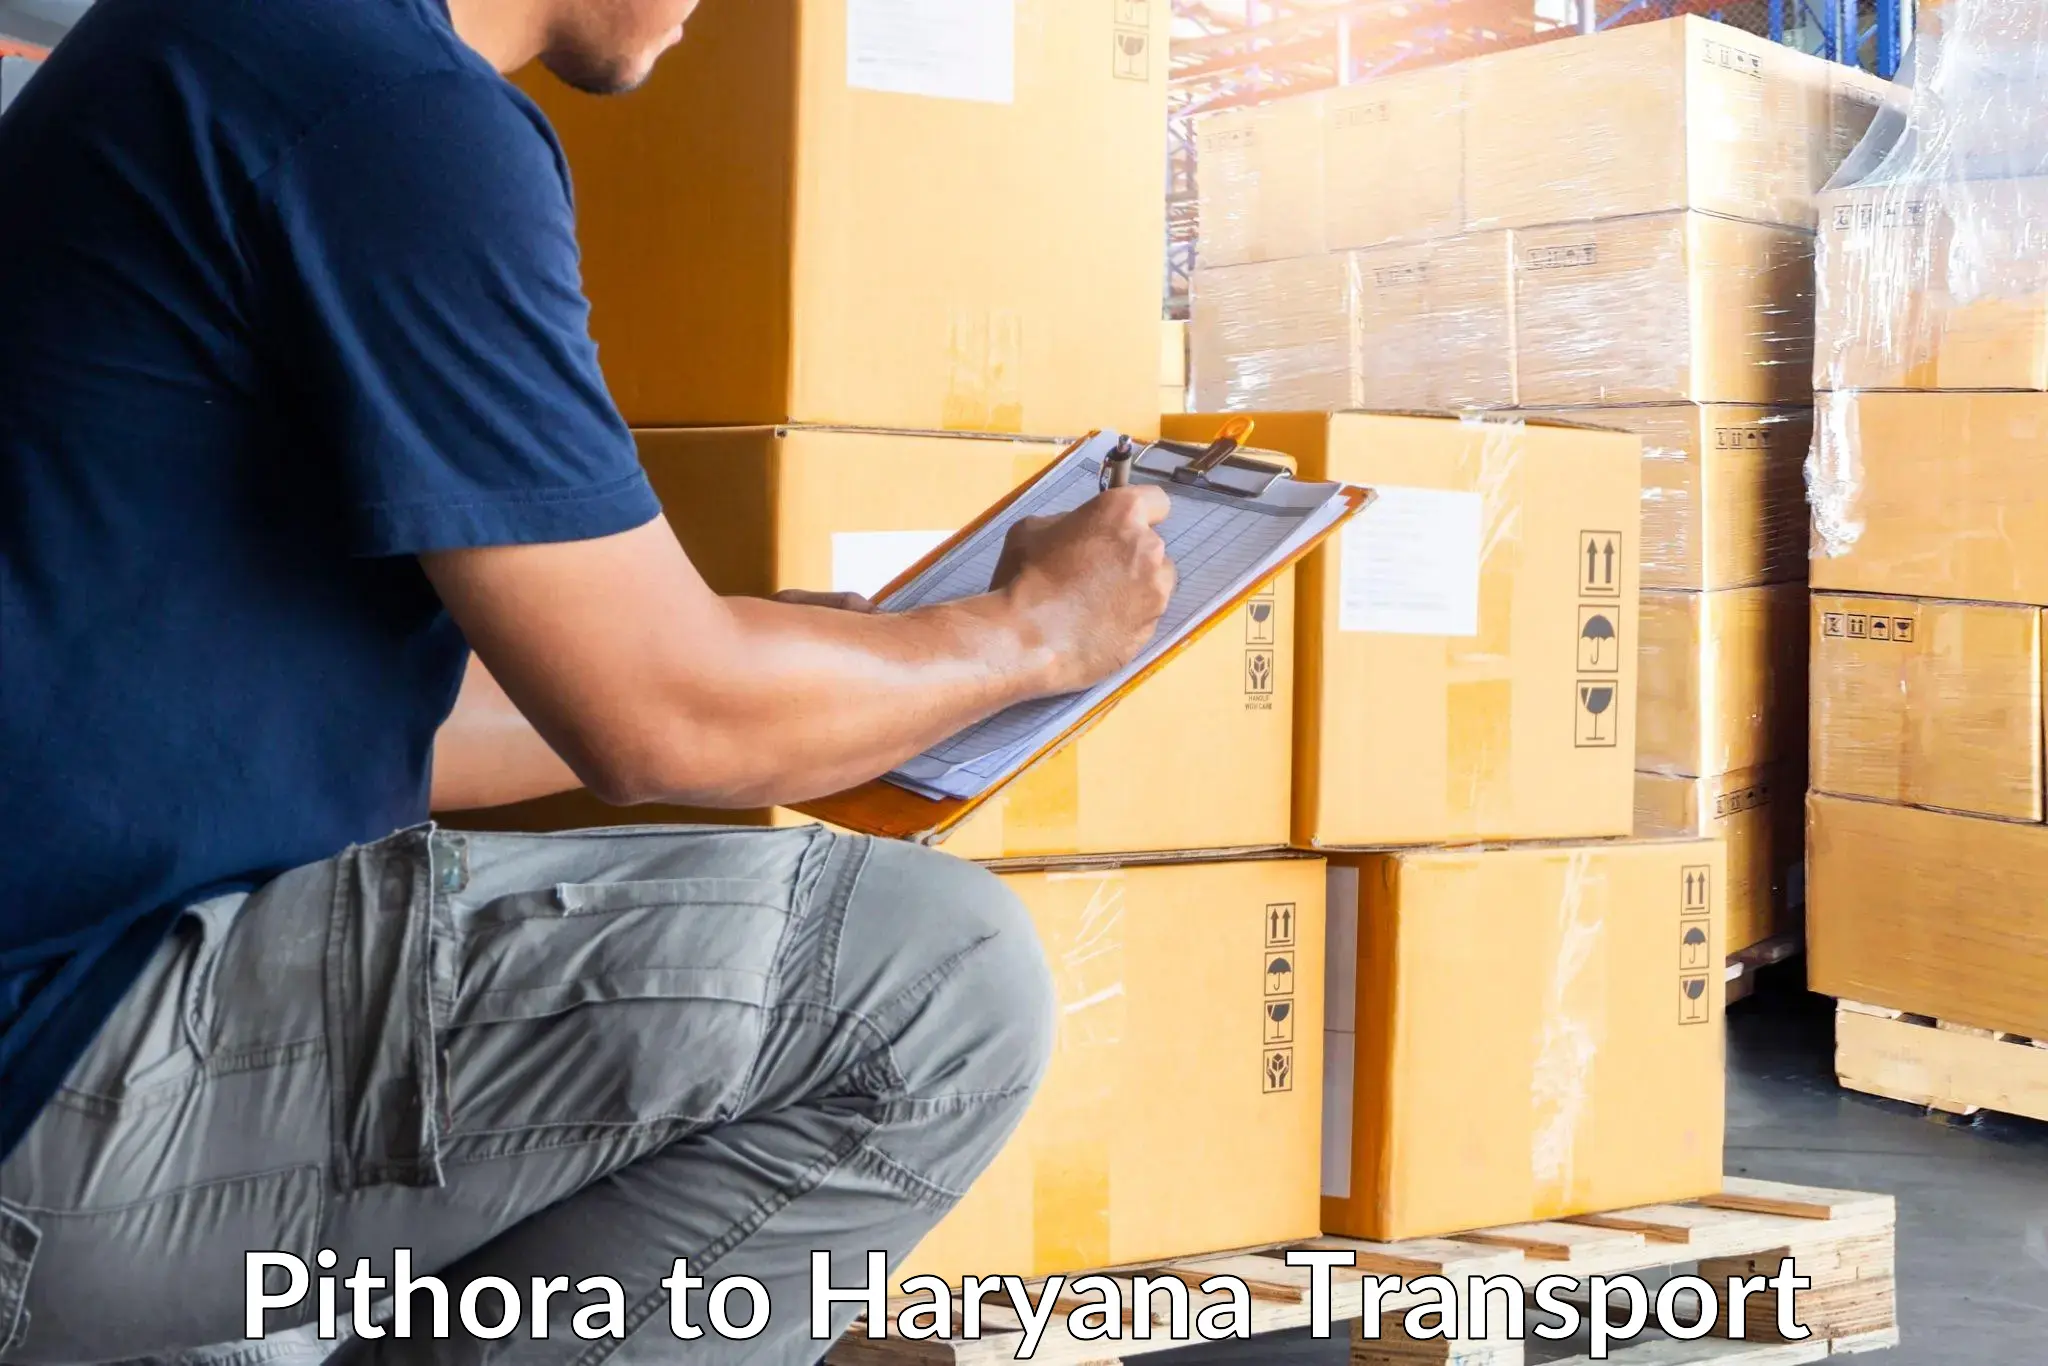 Shipping partner Pithora to Haryana